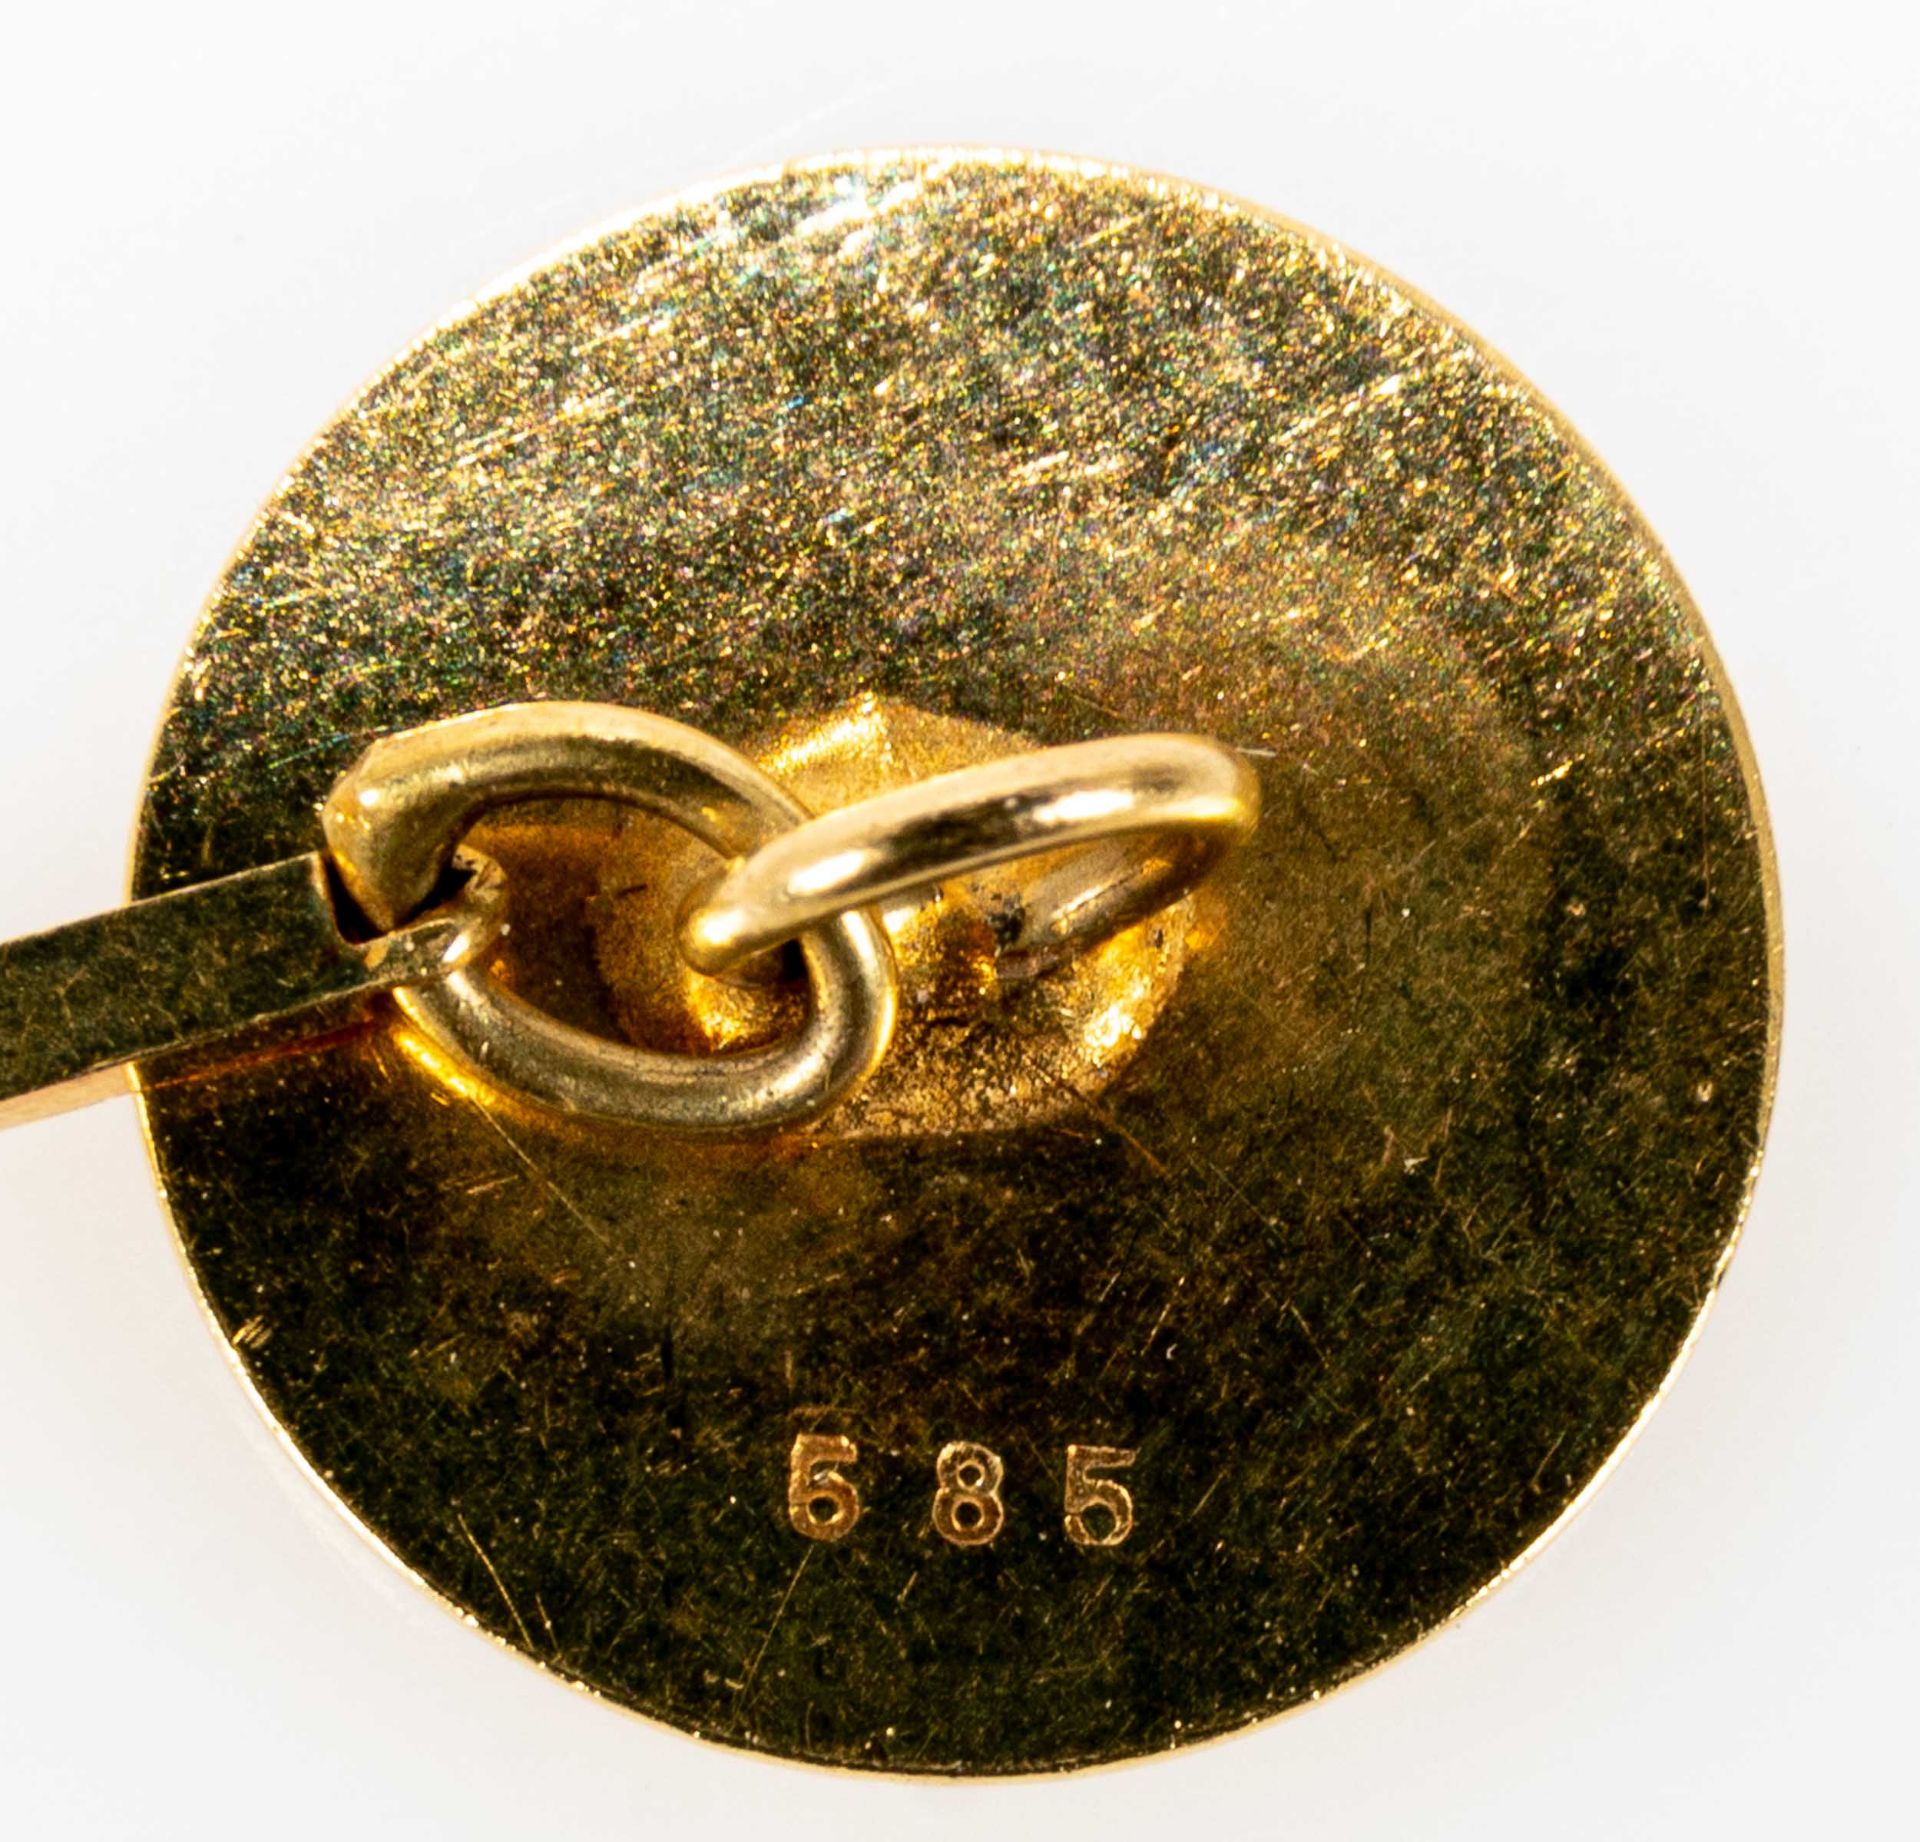 Flache, vergoldete DUGENA-Taschenuhr mit Datumsanzeige auf der "3", zentrale Sekunde, römische Indi - Bild 5 aus 5